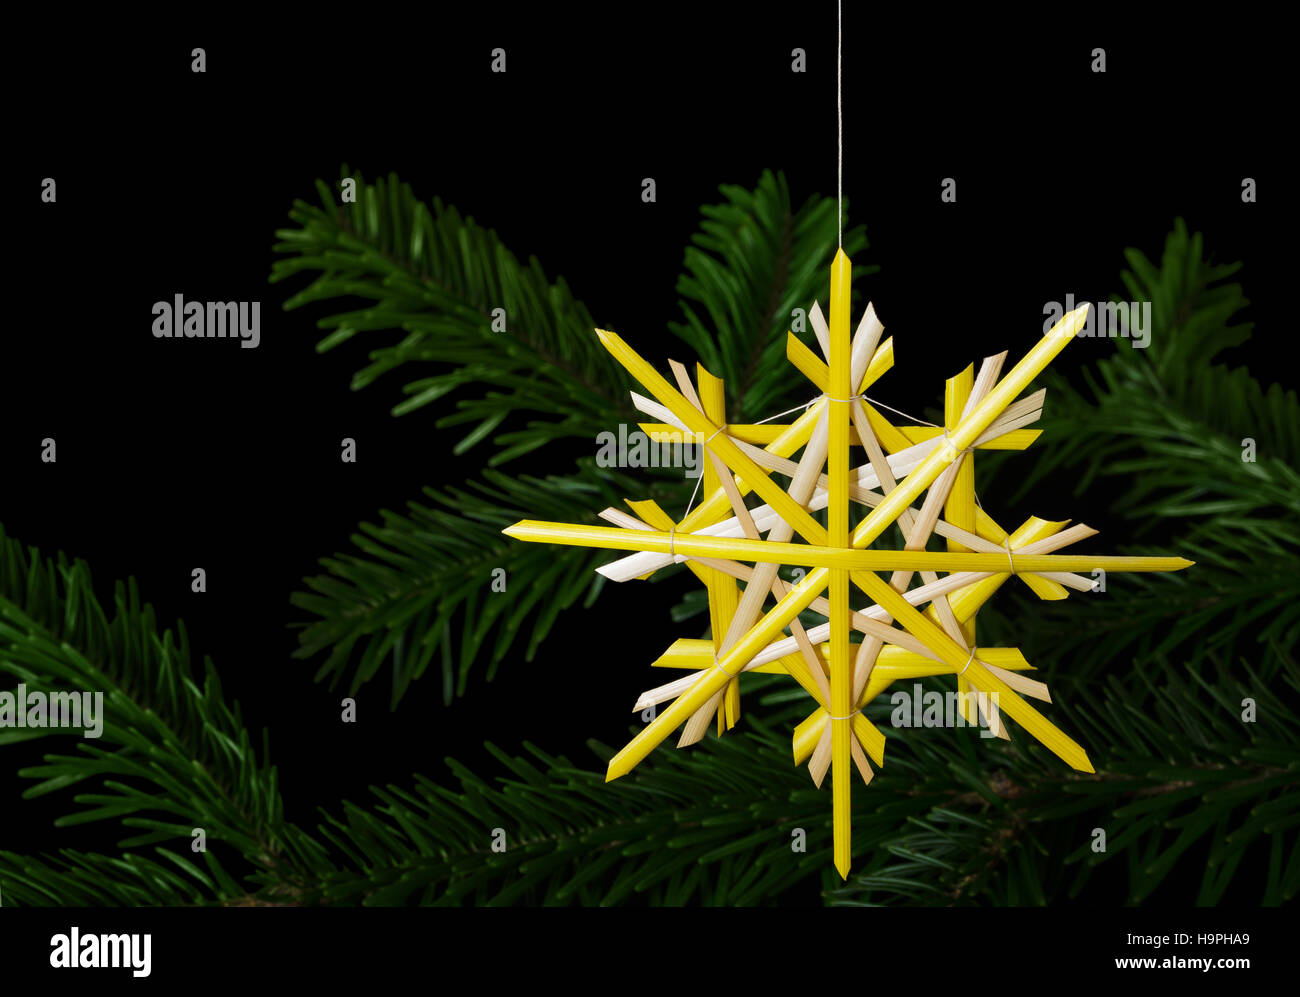 Décoration de Noël étoile jaune paille plus de branches de sapin. Décor fait main pour windows, comme cadeaux ou d'accrocher sur arbre de Noël. Banque D'Images